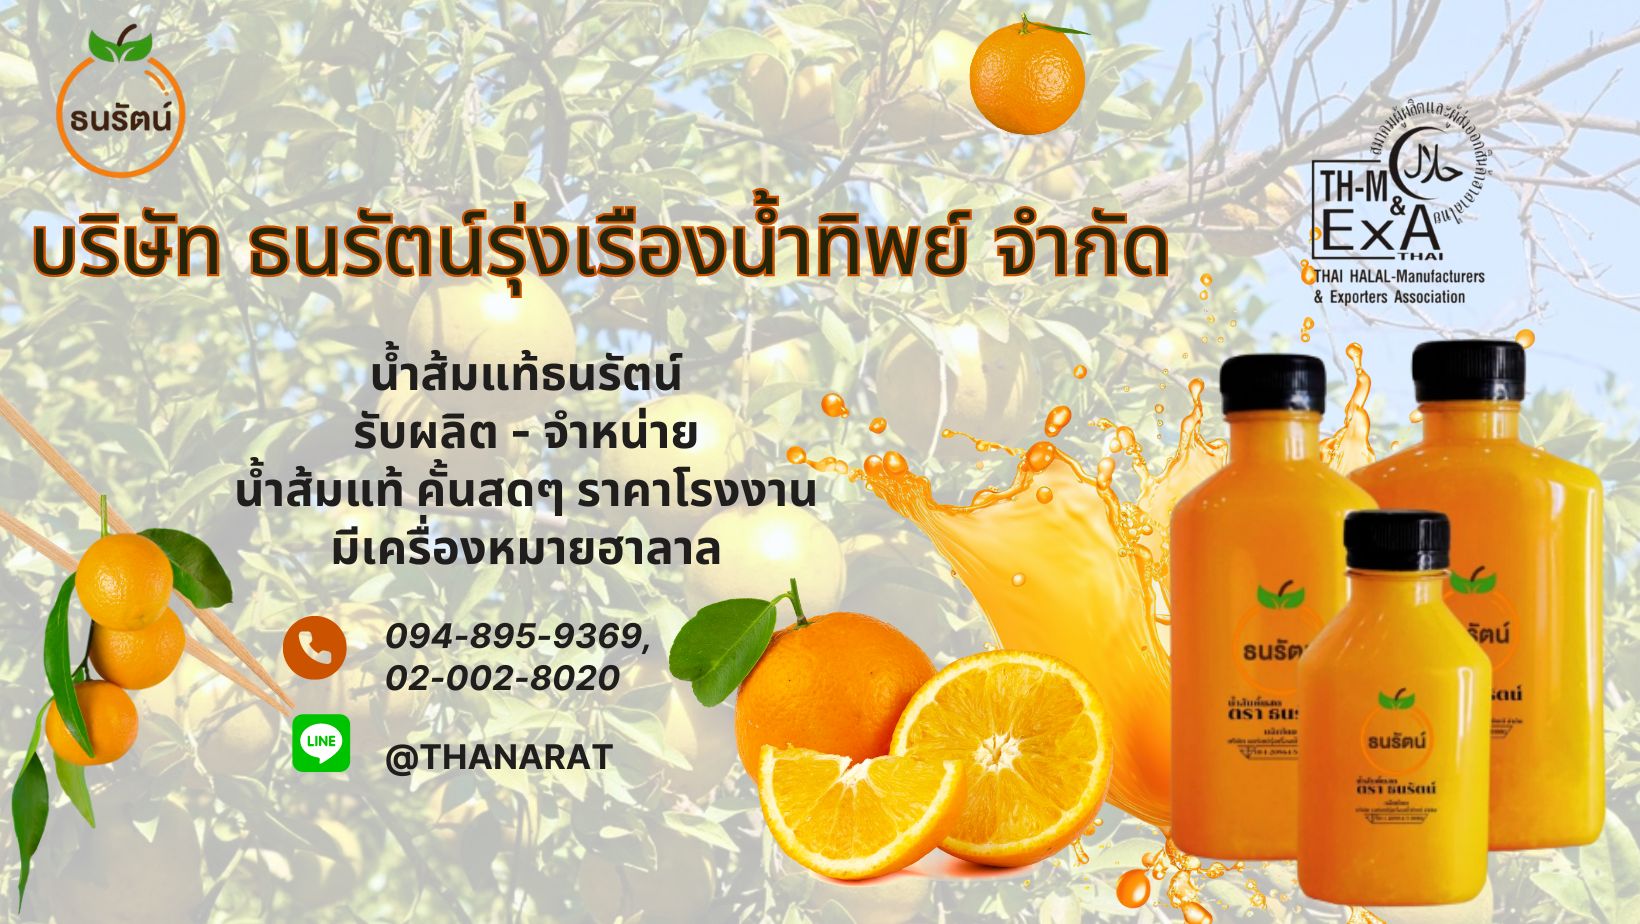 น้ำส้มแท้ธนรัตน์ รับผลิต   จำหน่าย น้ำส้มแท้ คั้นสดๆ ราคาโรงงาน